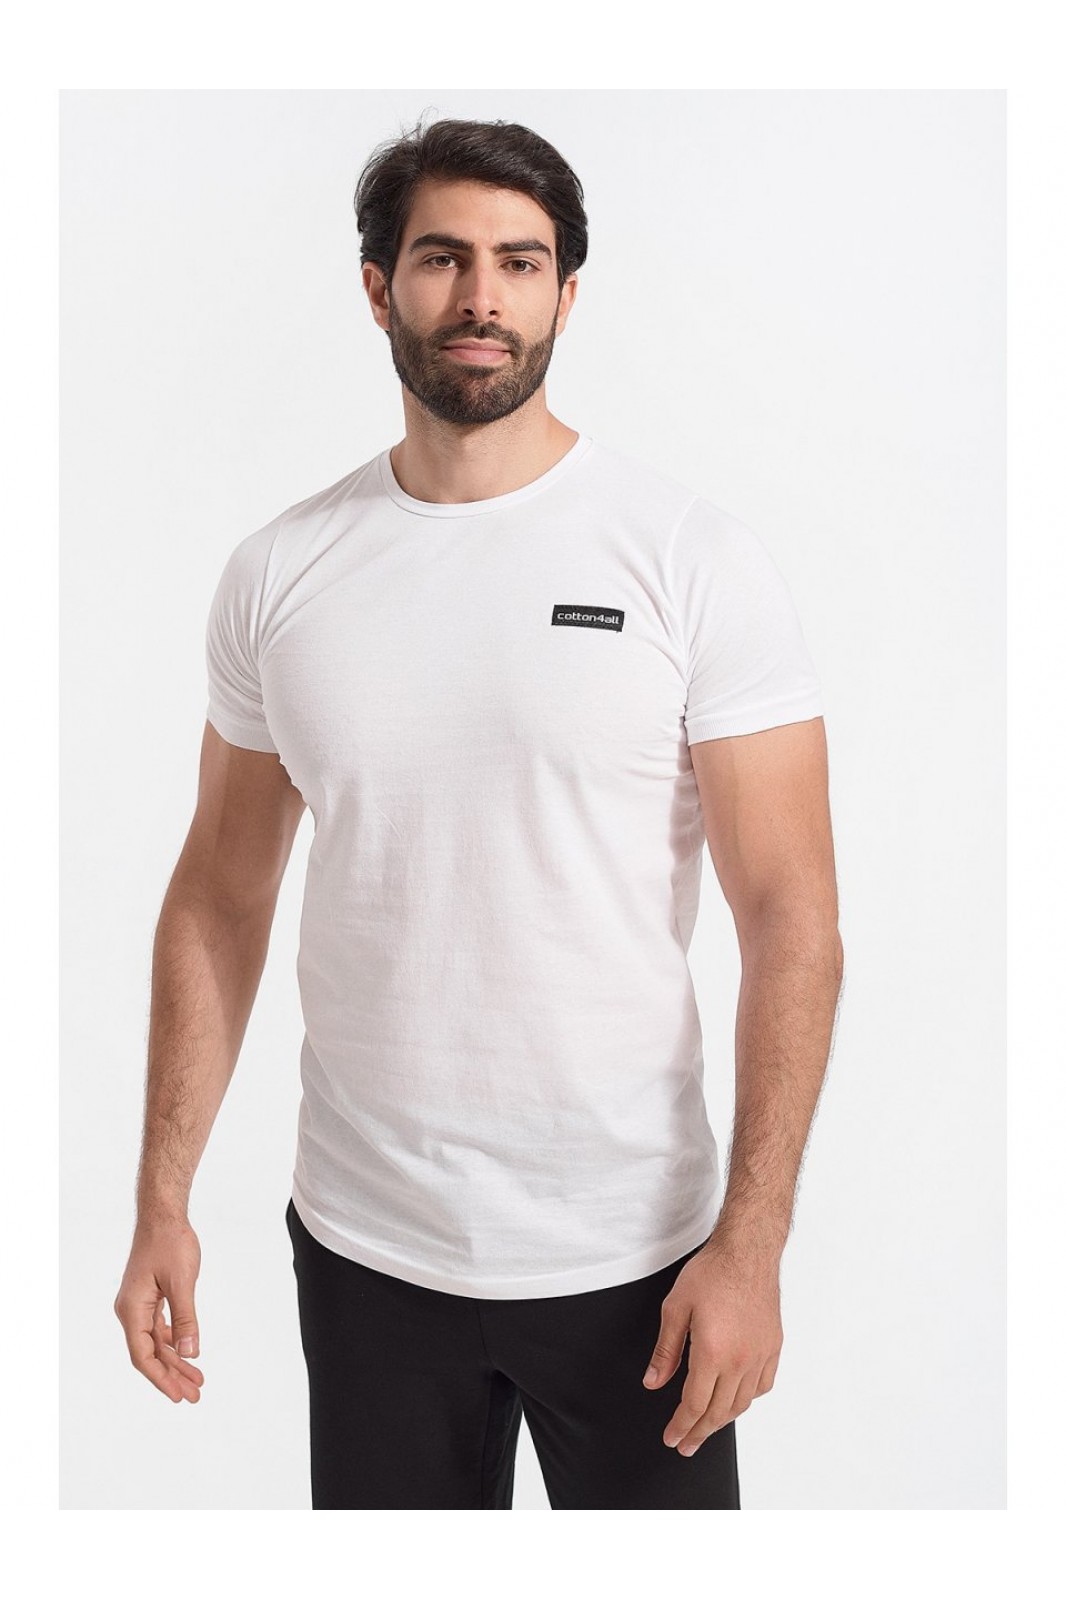 Herren T-Shirt Cotton4all Never Enough Weiß